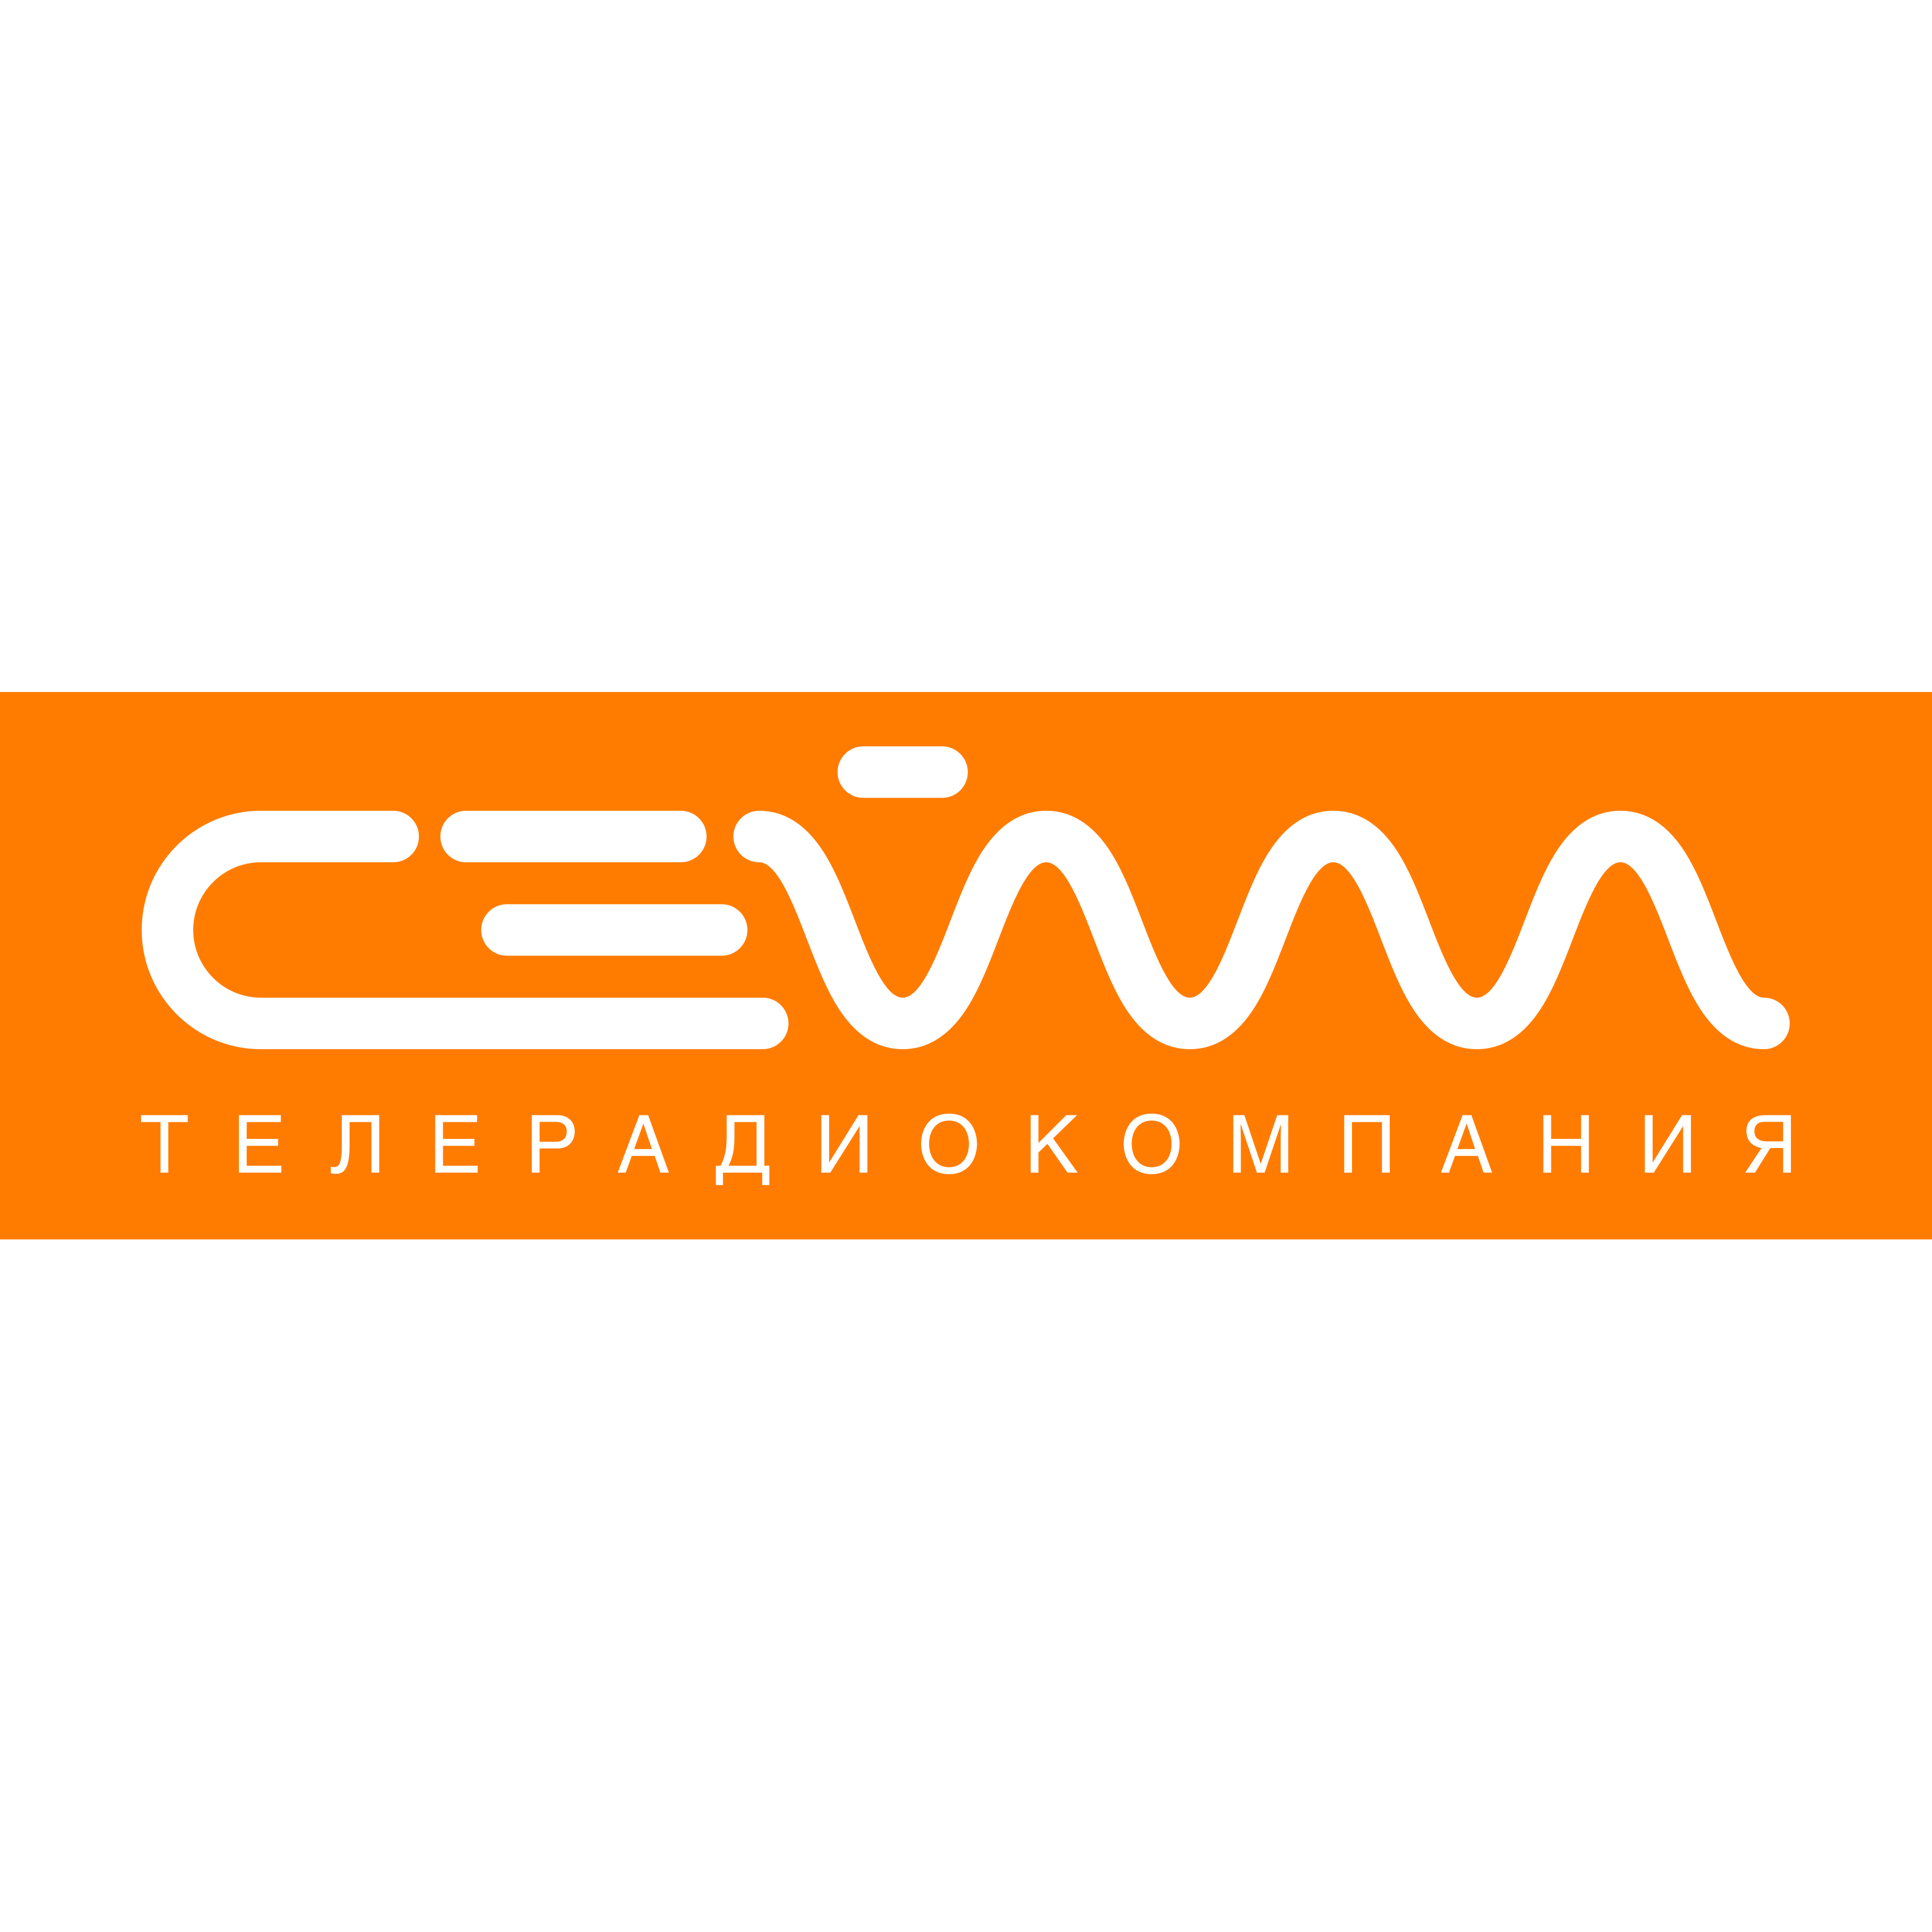 Логотип телеканала Сейм